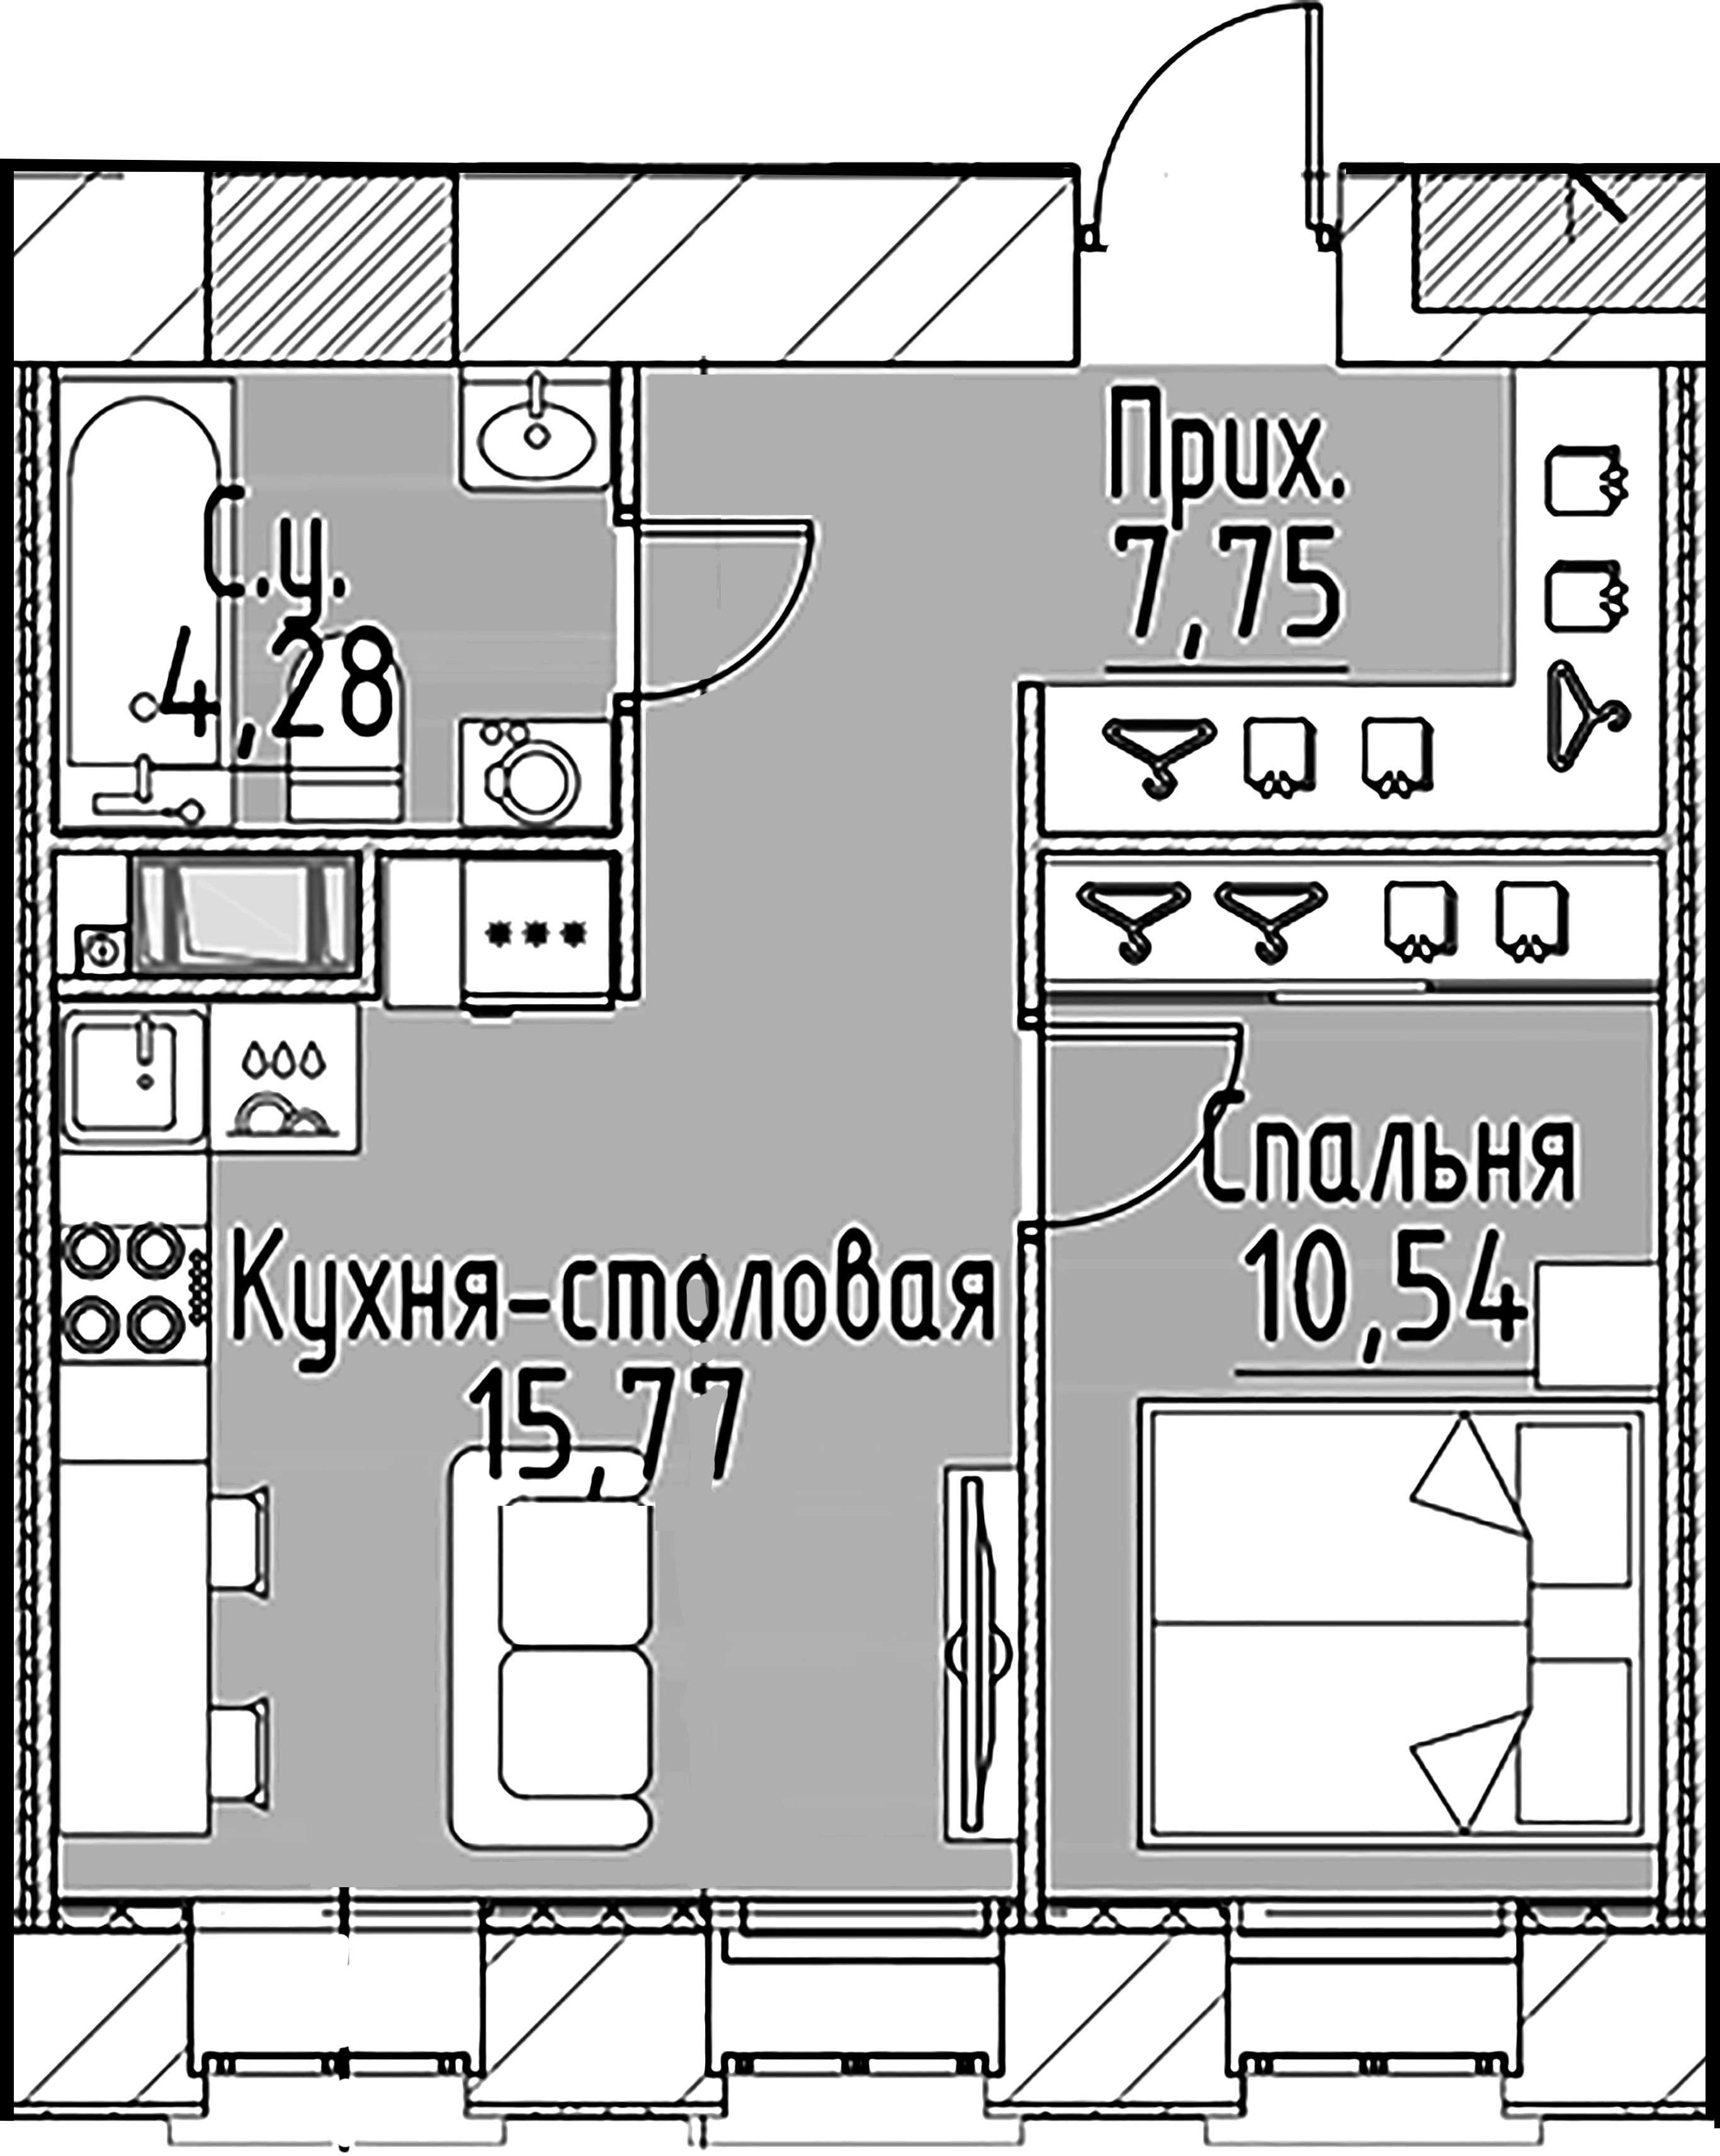 1-комнатная квартира  №154 в Моисеенко, 10: 38.34 м², этаж 4 - купить в Санкт-Петербурге